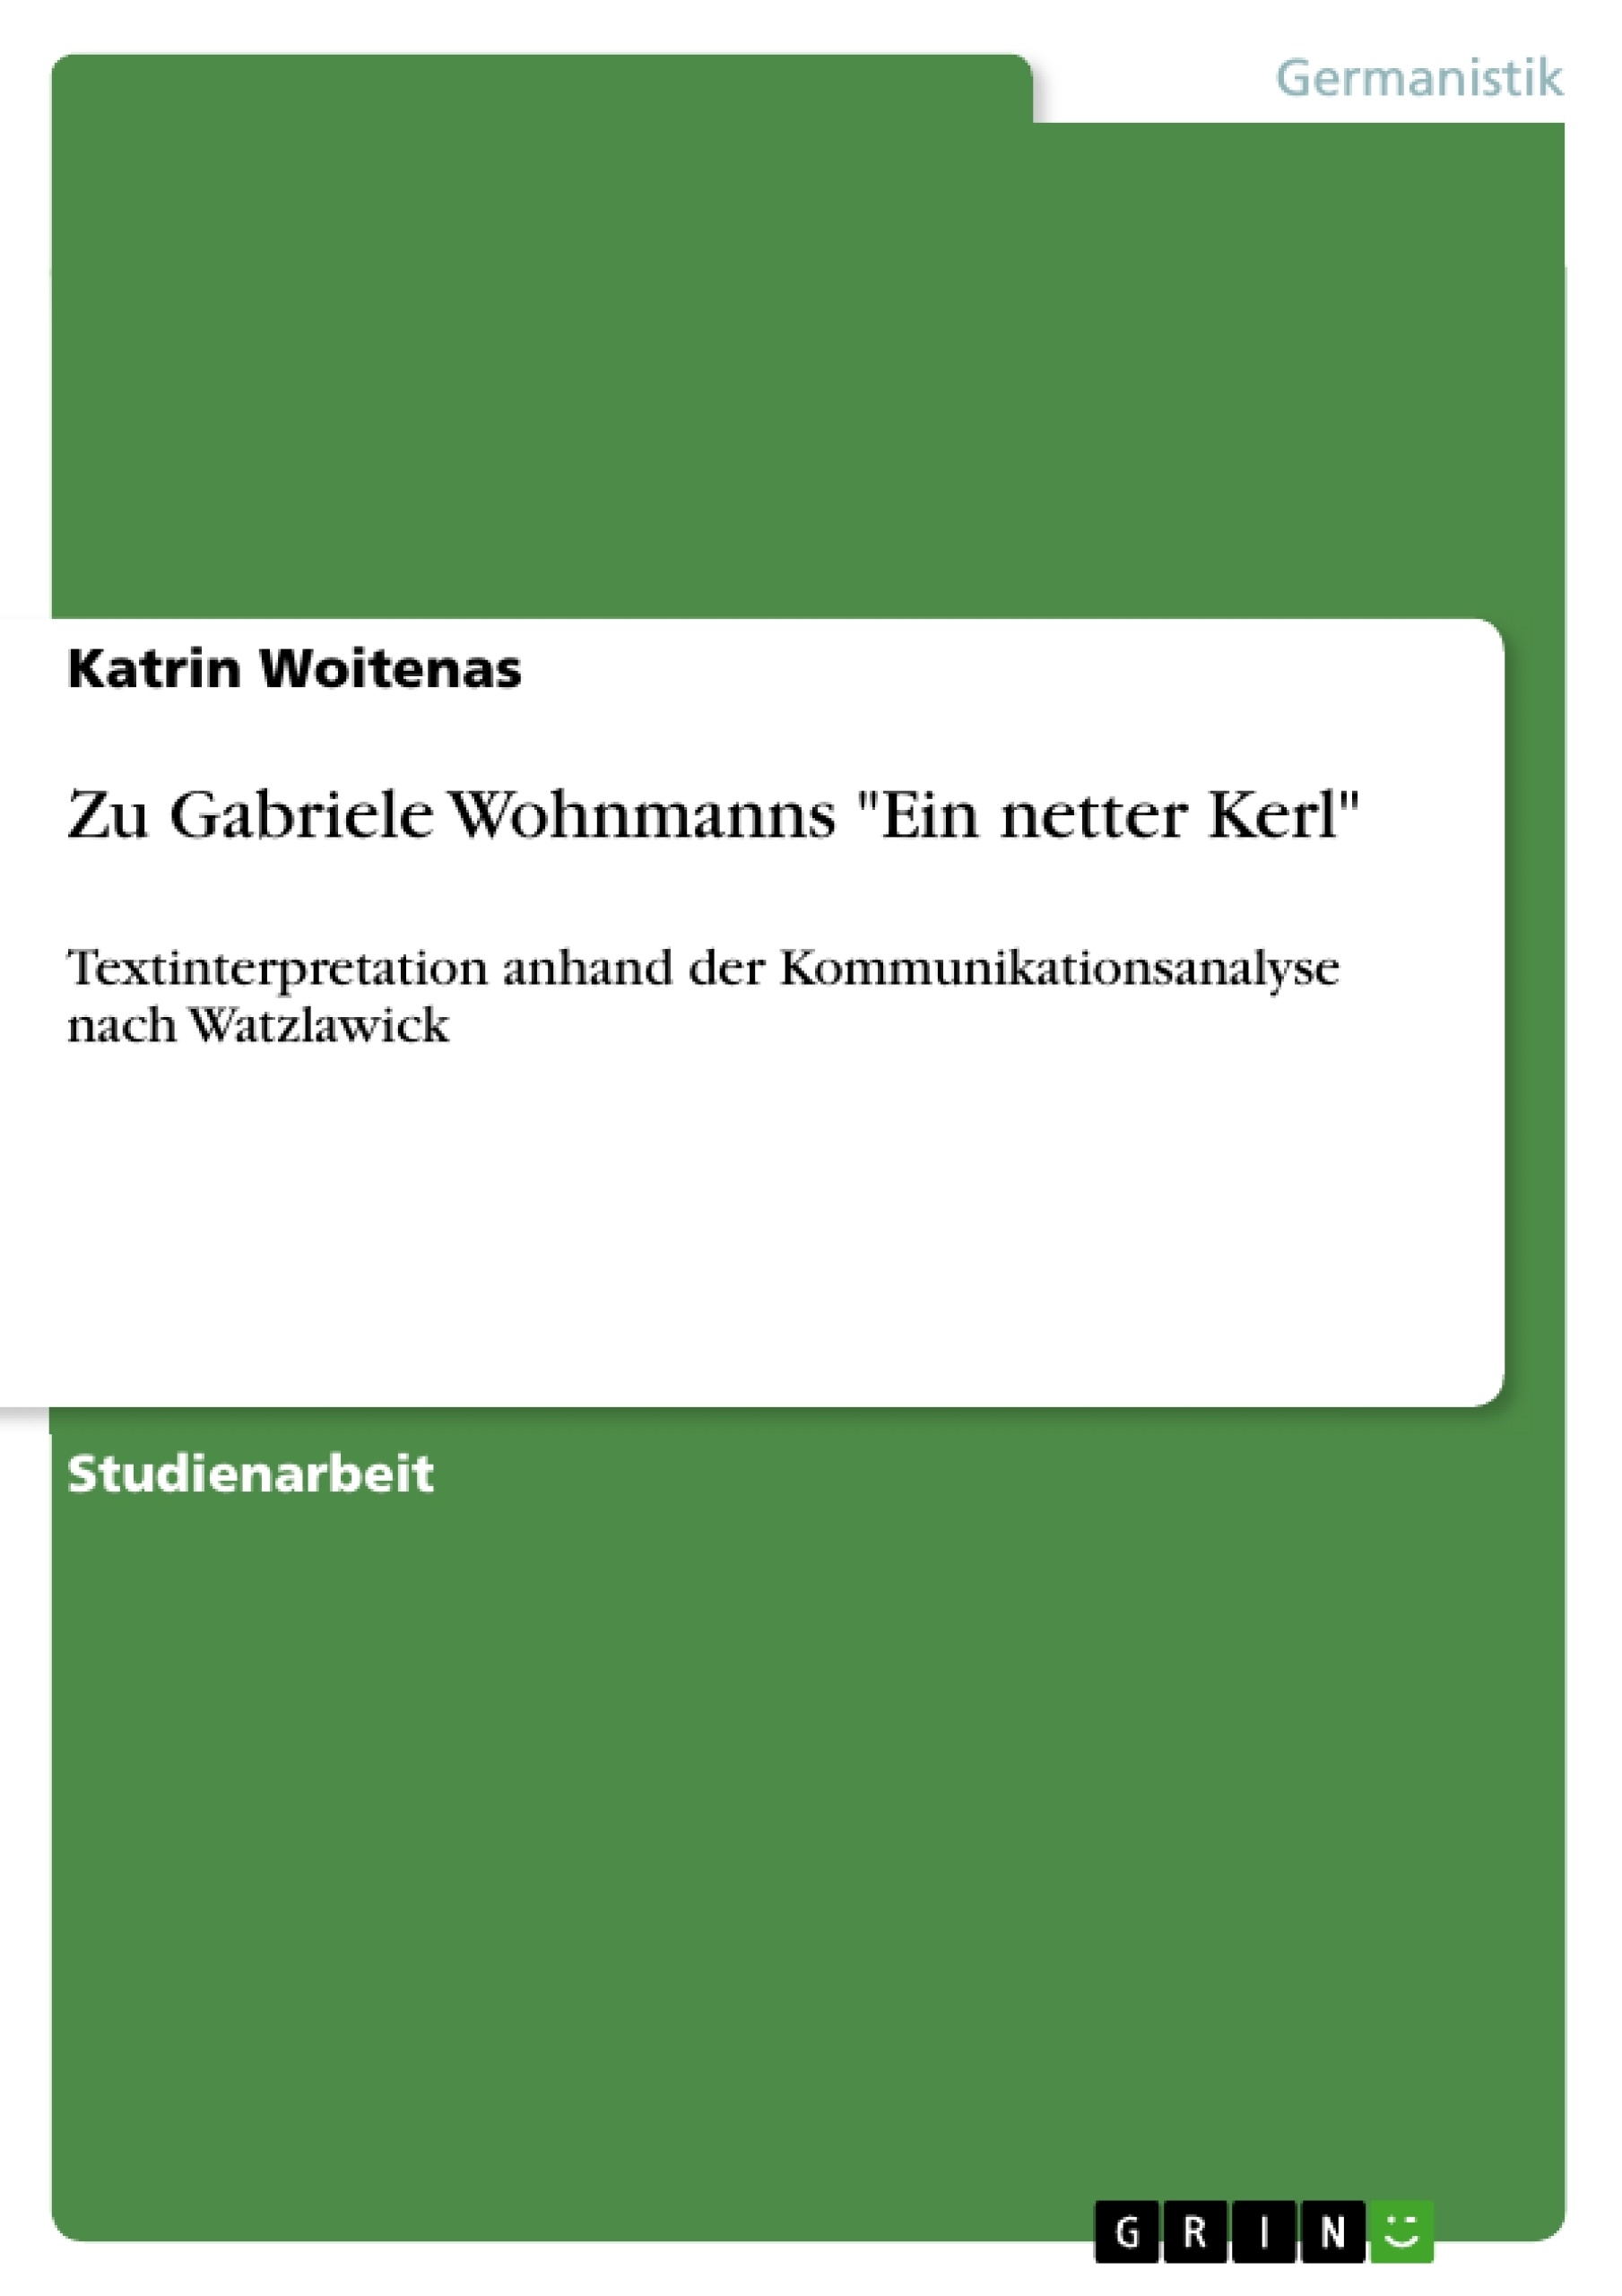 Título: Zu Gabriele Wohnmanns "Ein netter Kerl"